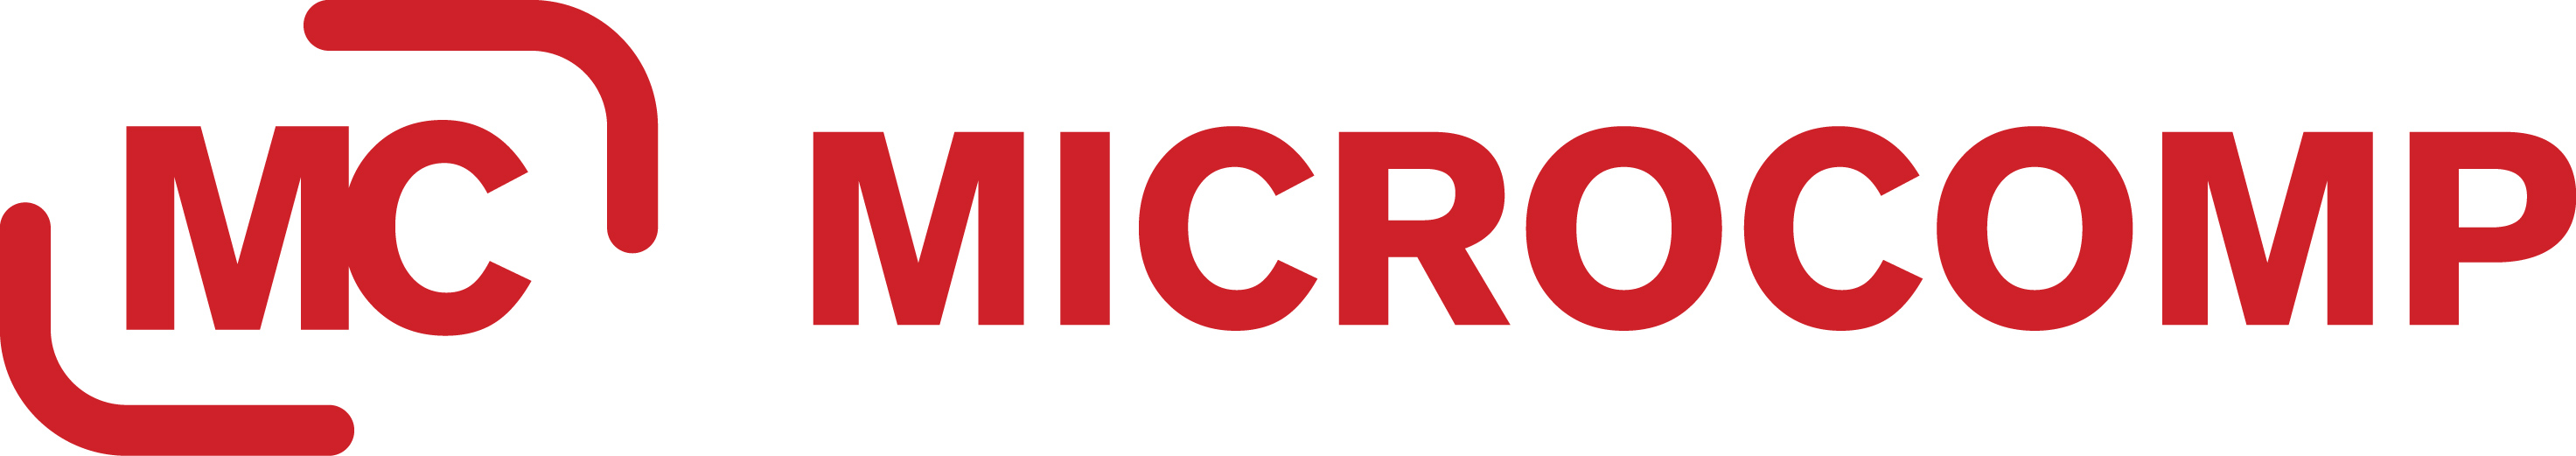 Microcomp logo